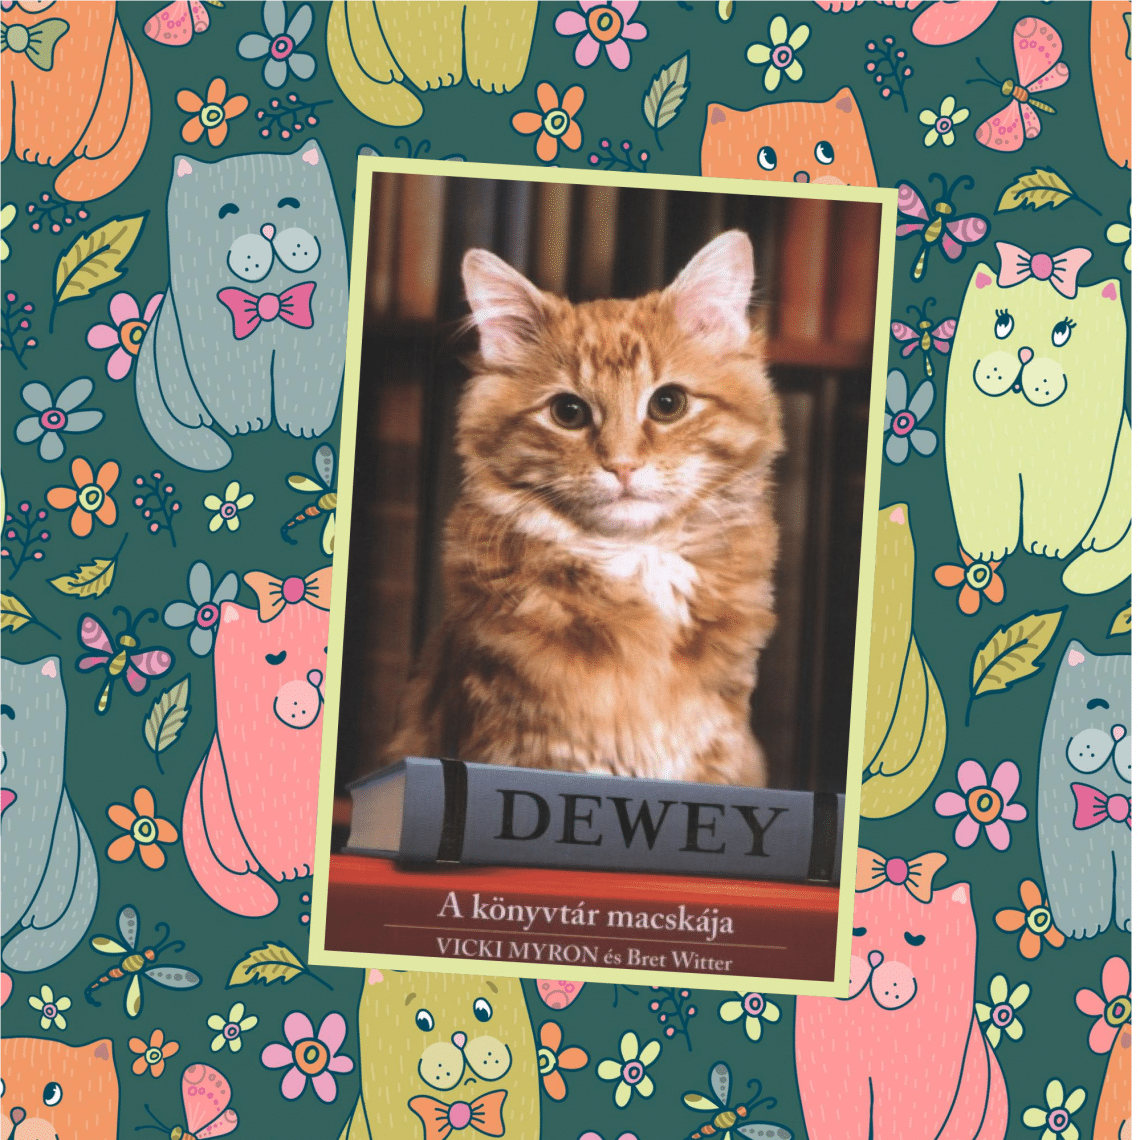 Dewey – A könyvtár macskája (Vicki Myron)